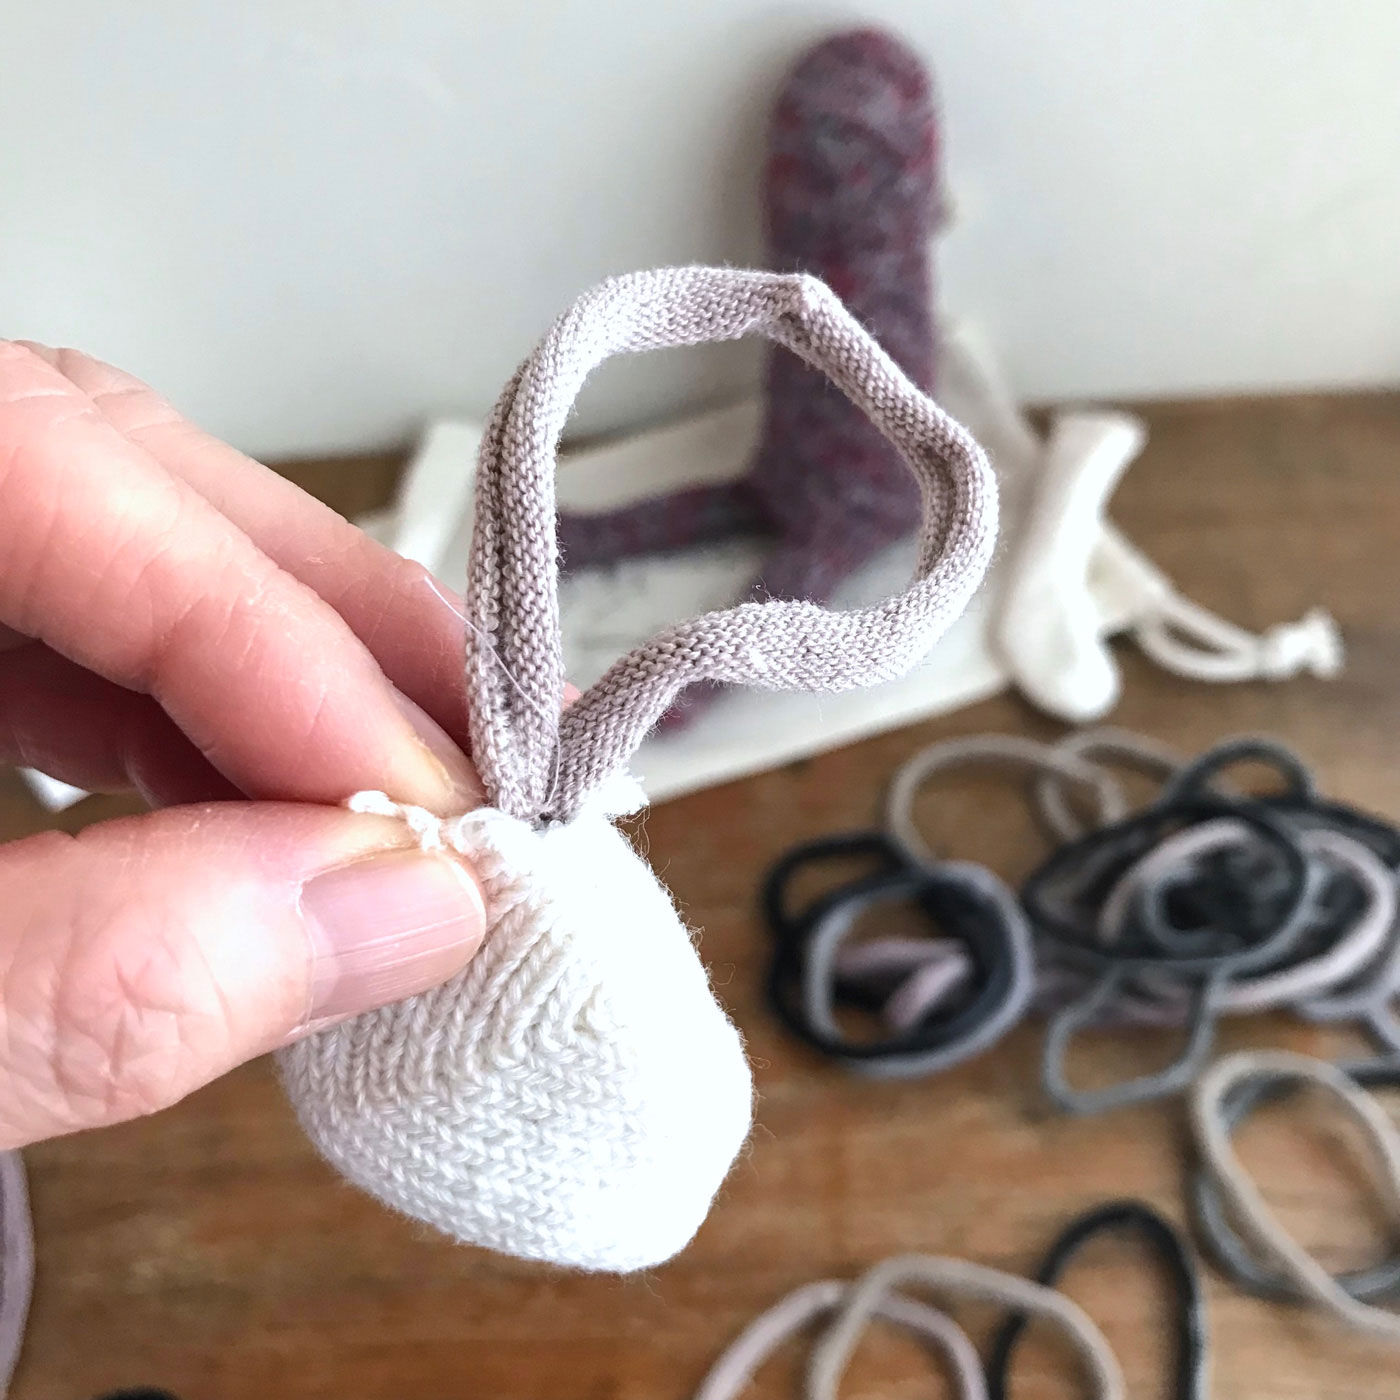 フェリシモの雑貨 Kraso|残糸で編んだ靴下と端材で作るおさるのぬいぐるみキット〈巾着付き〉|輪っかは、意外と詰めやすいです。「耳」のパーツは結構重要。ぷっくり大きく、とかサイズや形はもちろん、つける位置でかなり印象が変わりますね。